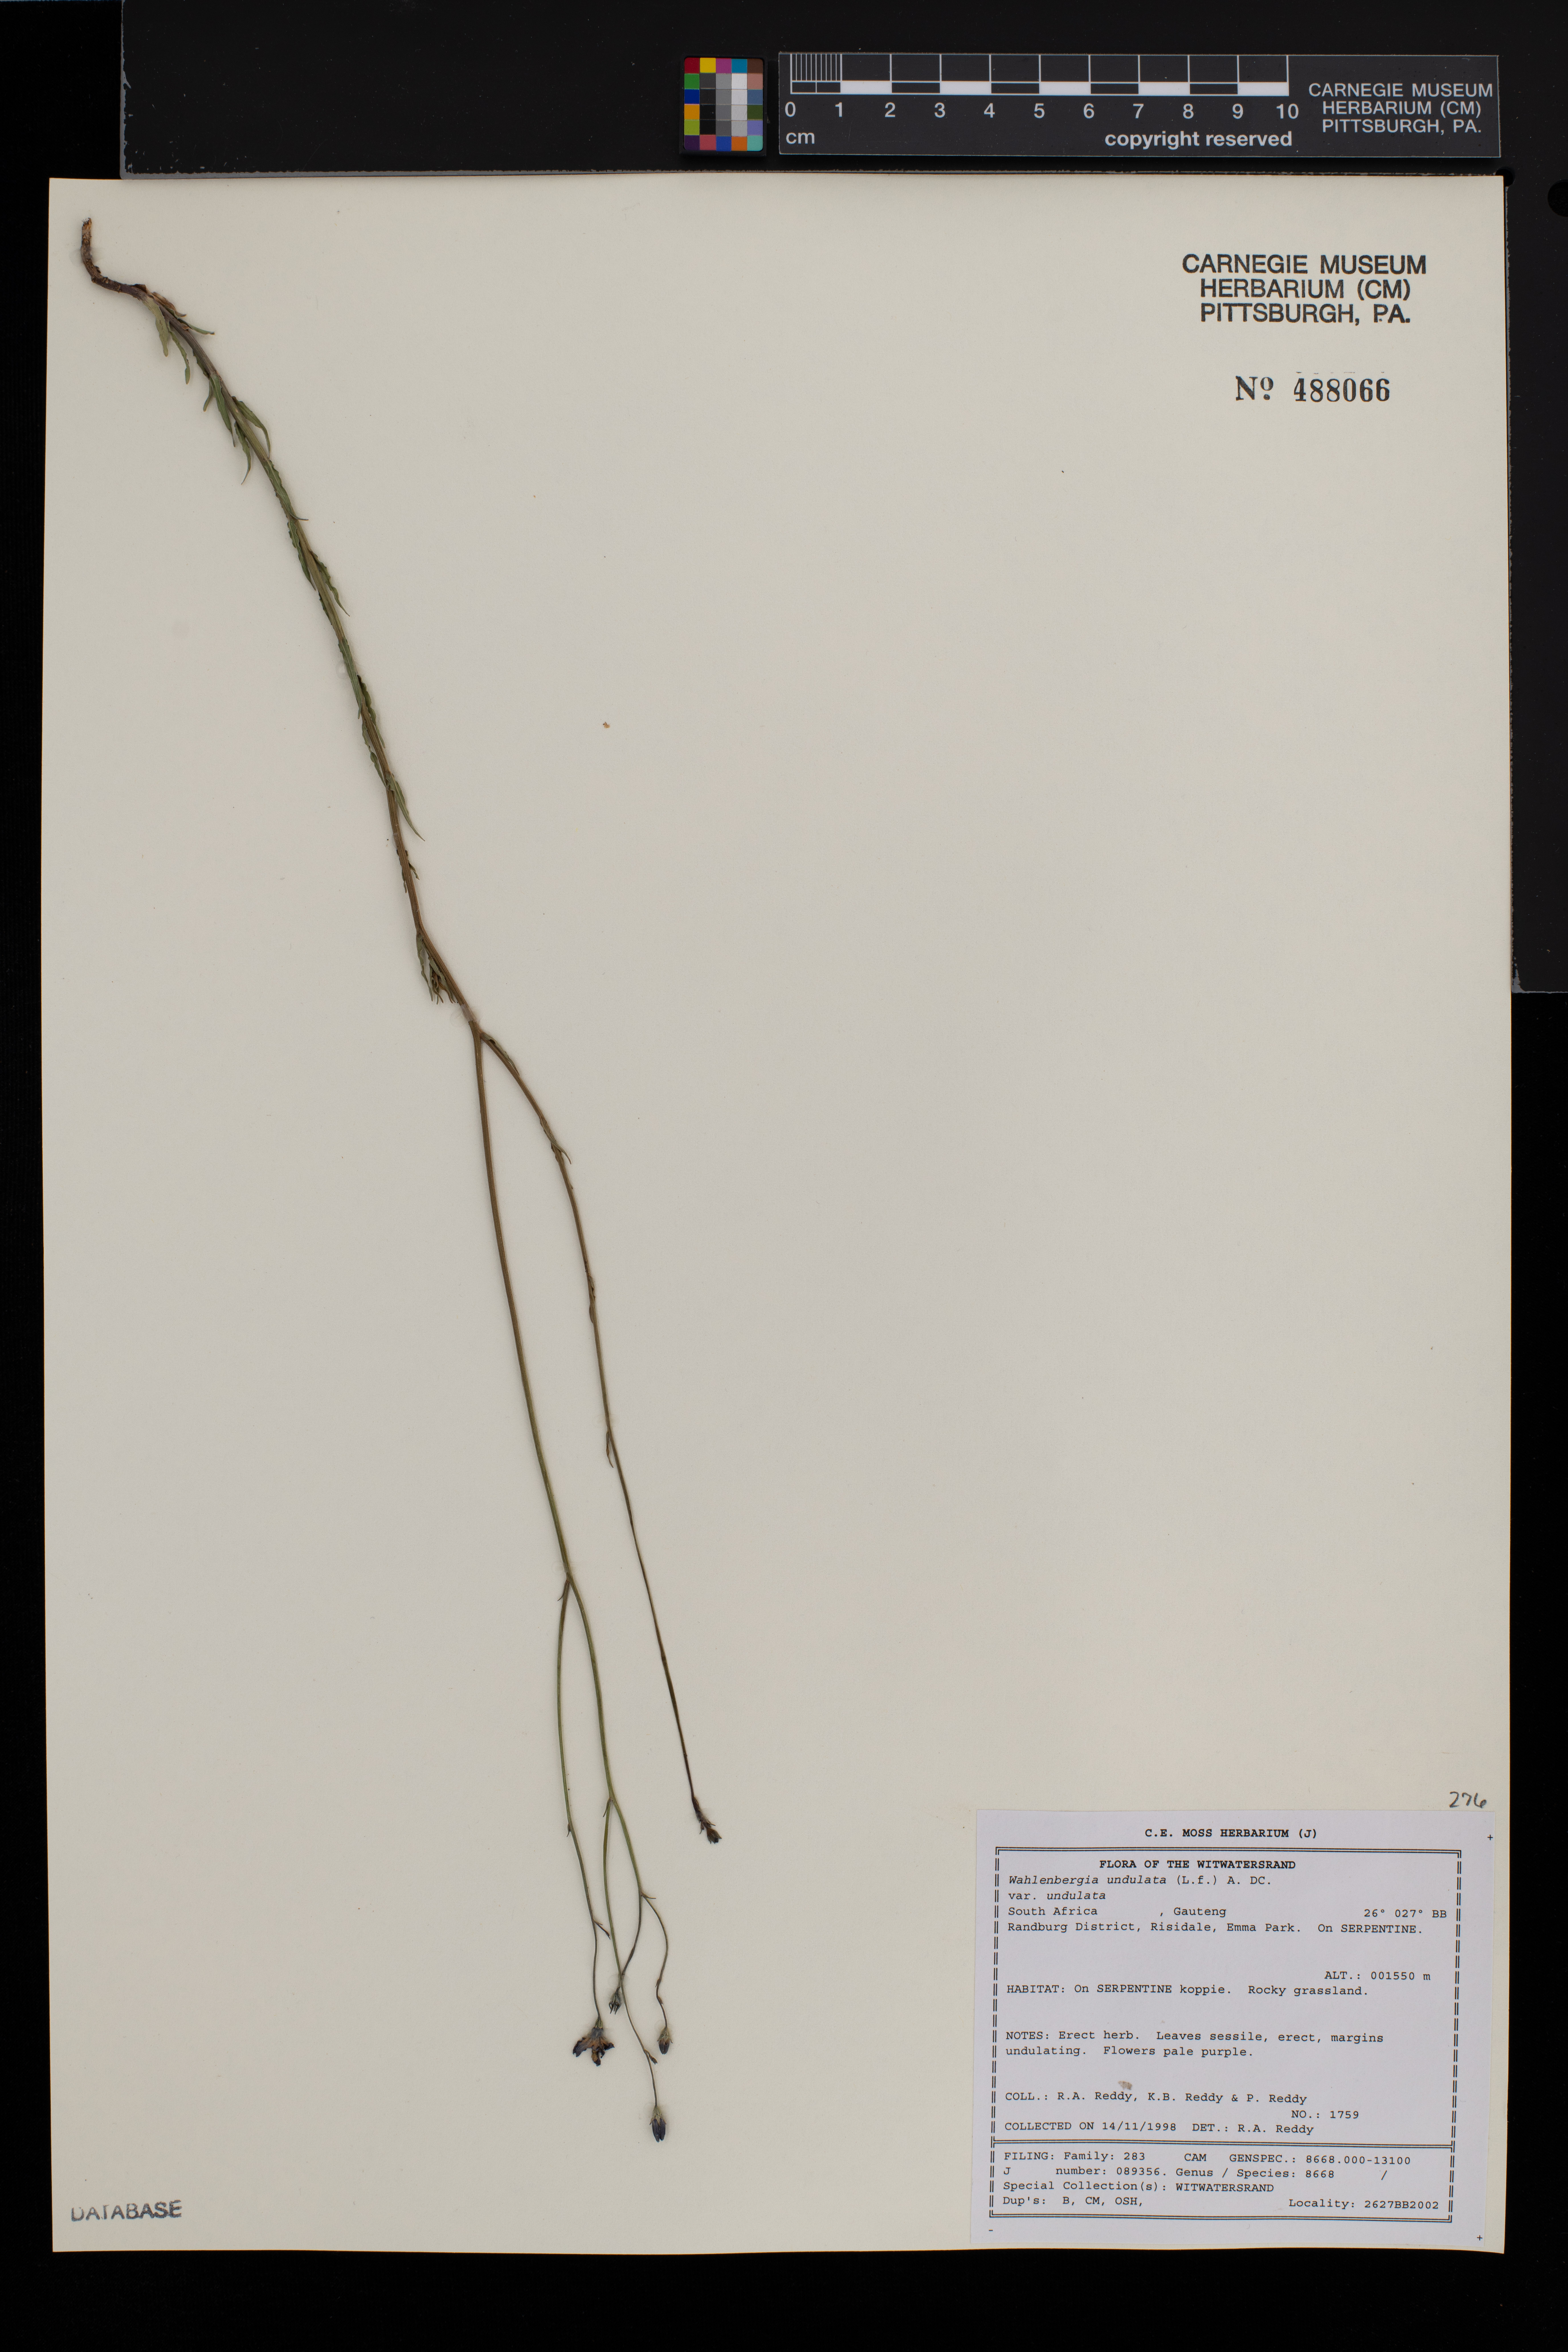 Wahlenbergia undulata image